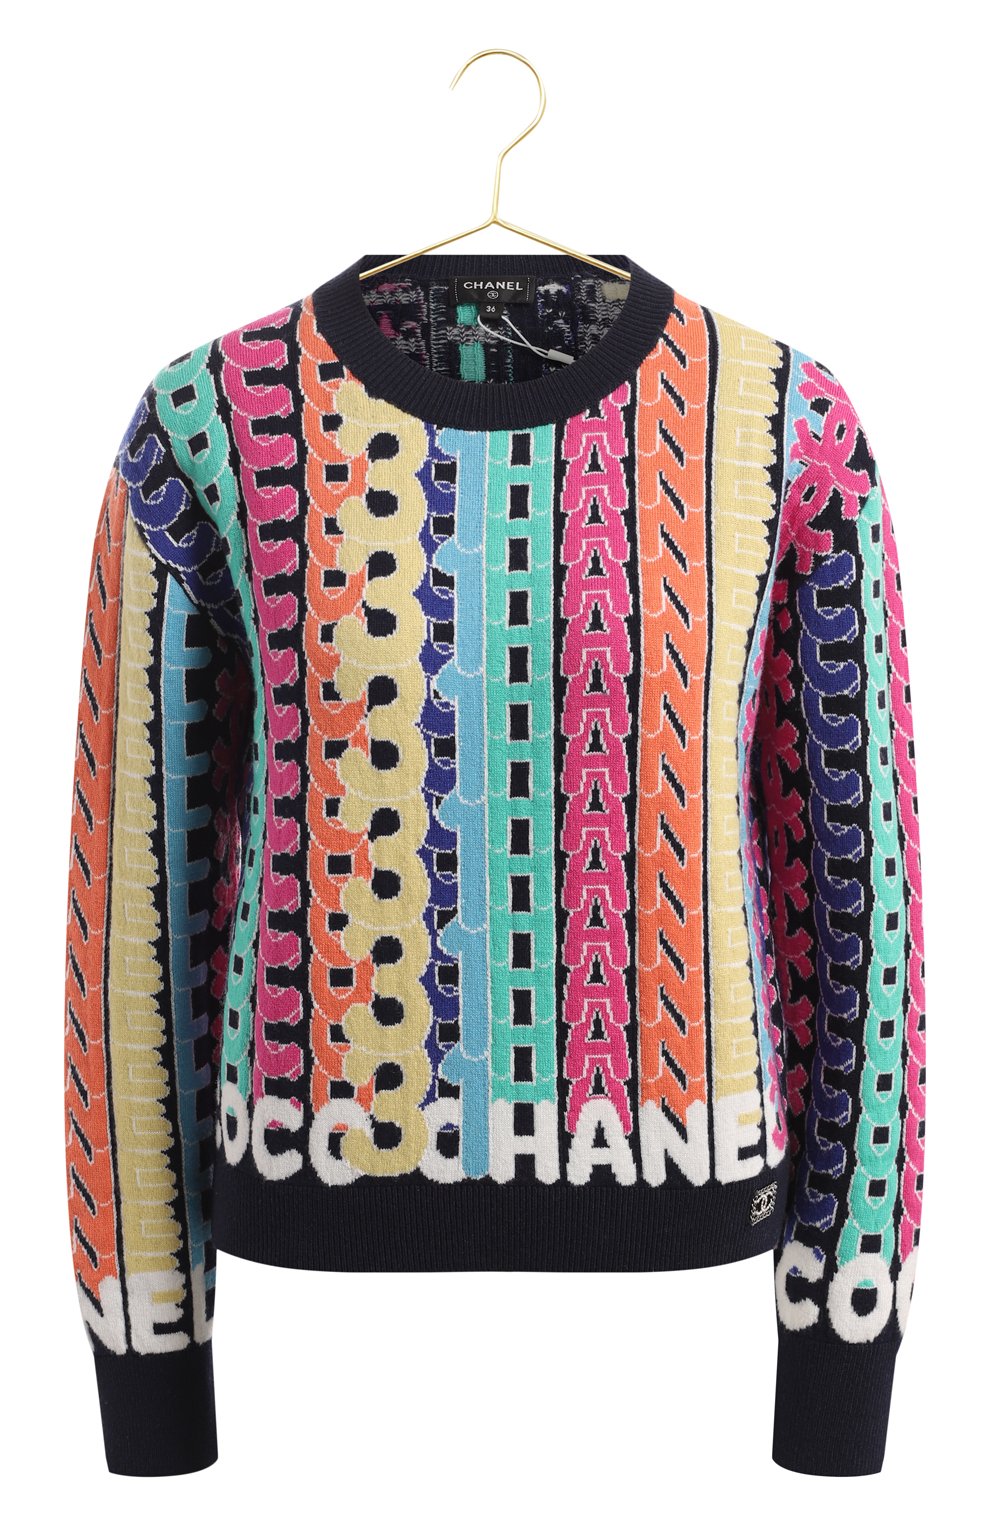 Кашемировый свитер | Chanel | Разноцветный - 1